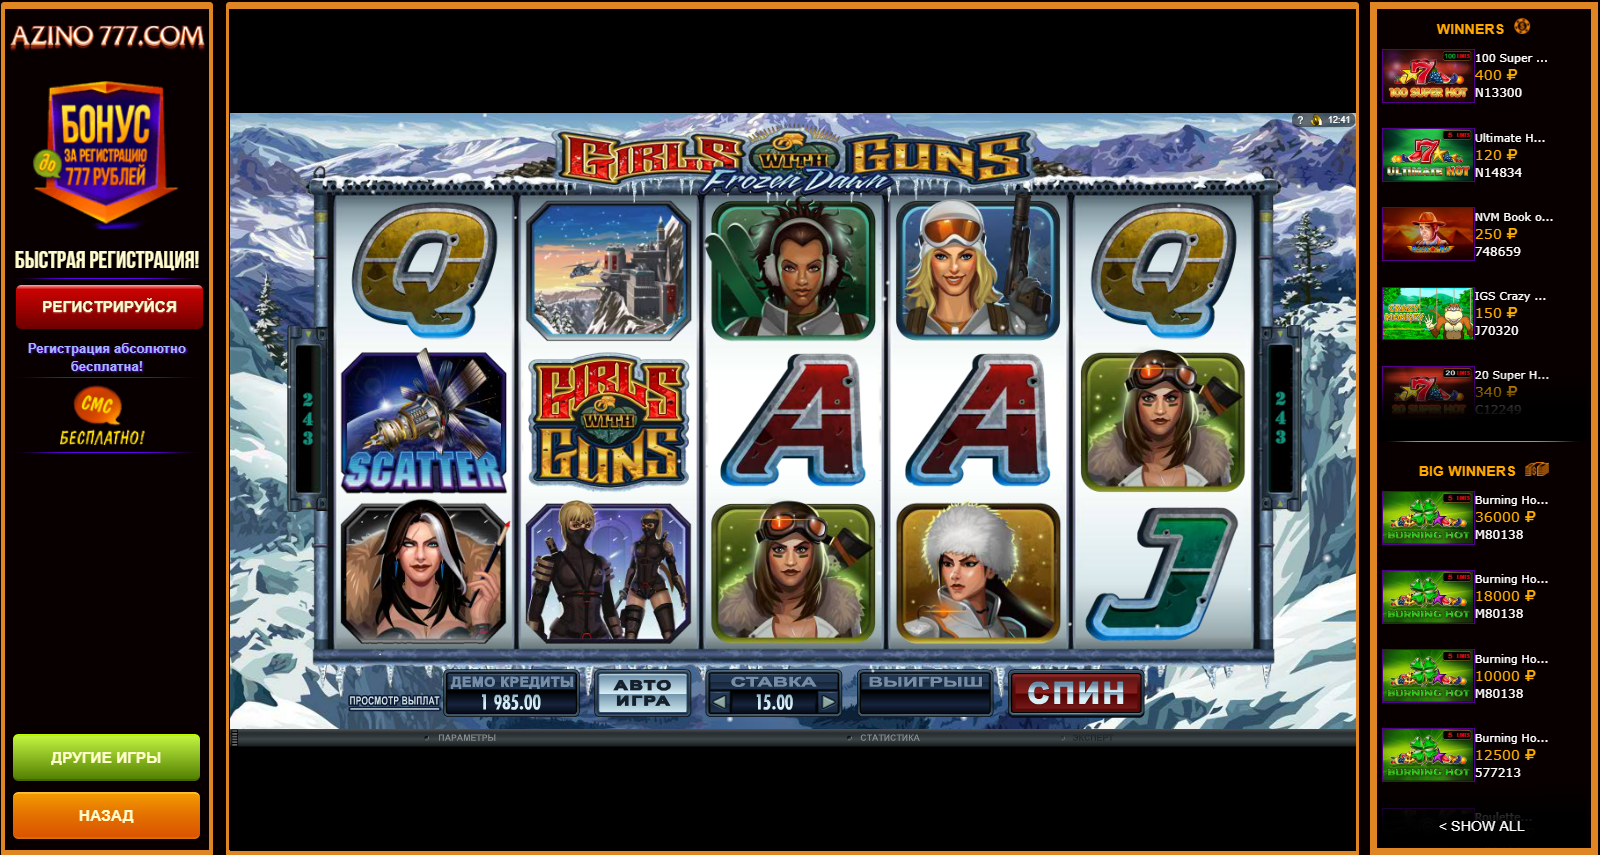 Азино777 официальный сайт демо игры играть бесплатно без регистрации казино вулкан делюкс игровые автоматы